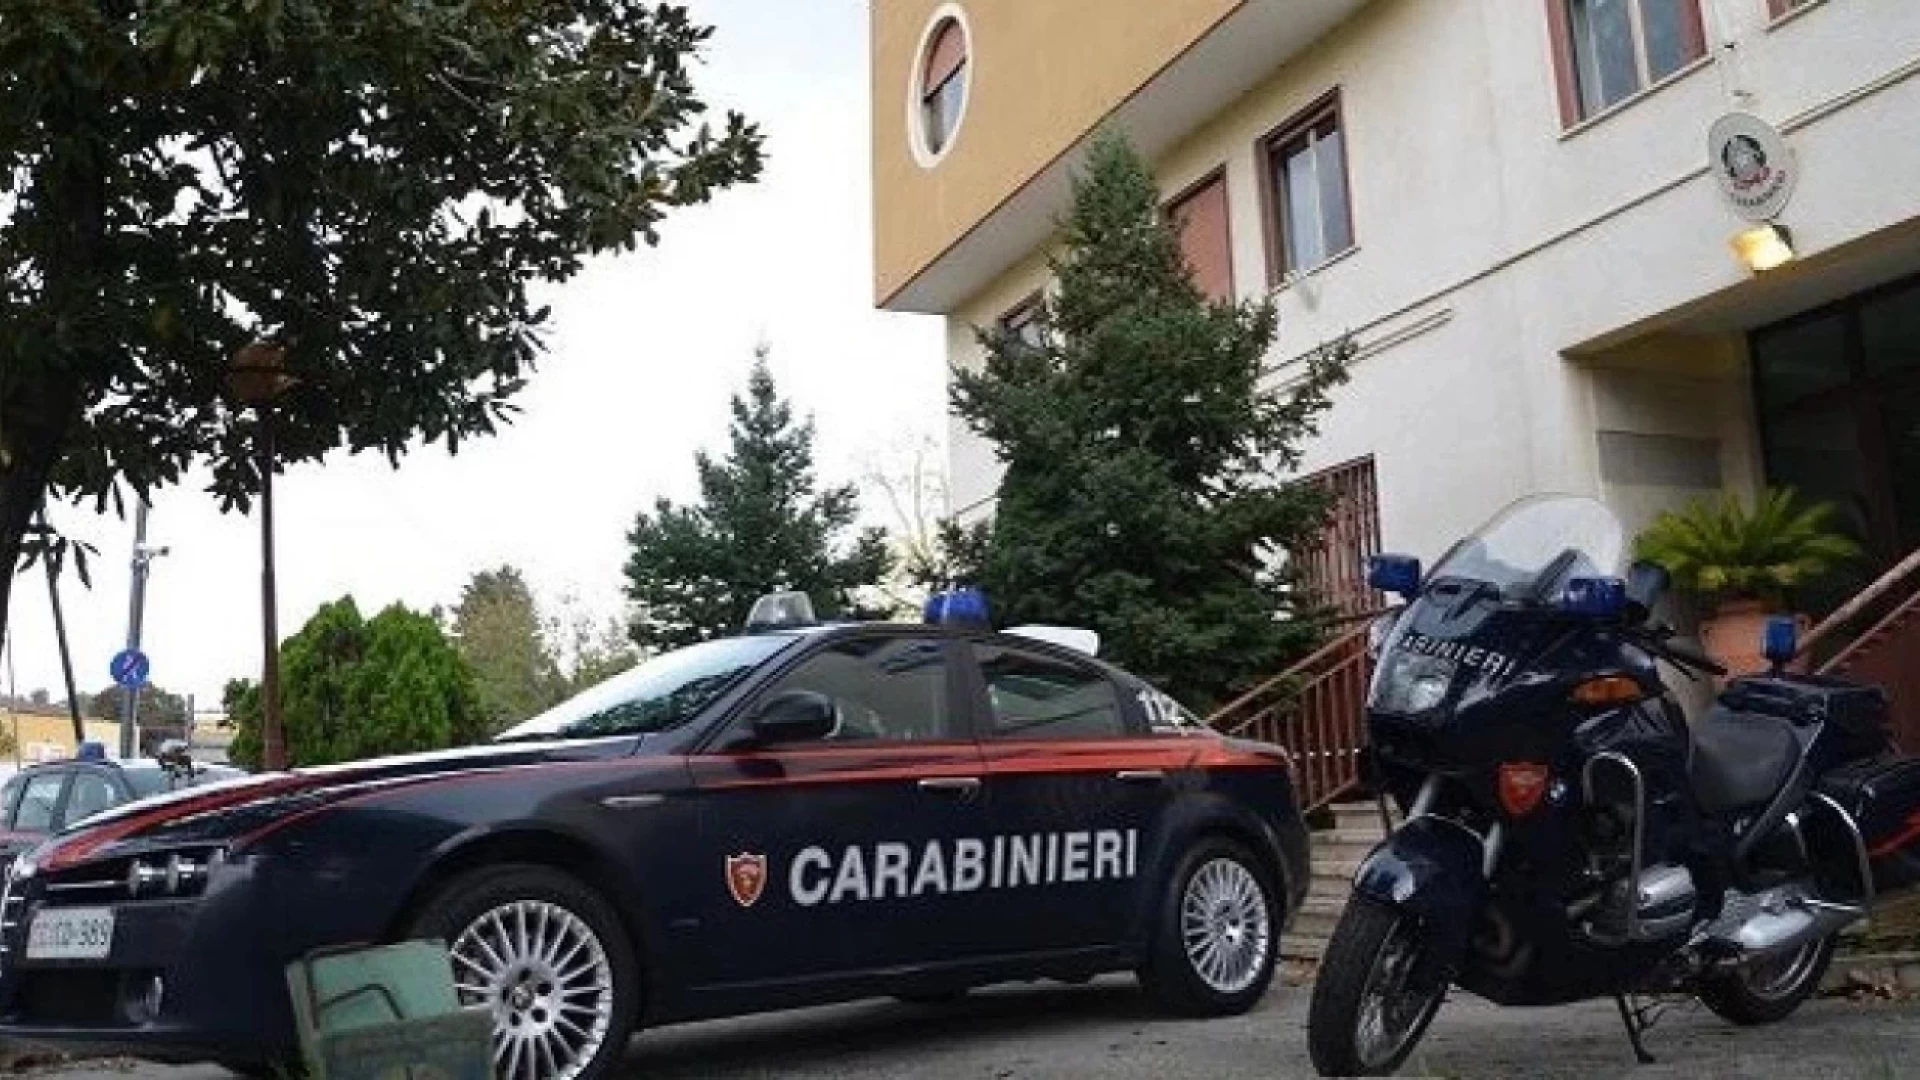 Agnone: I carabinieri fermano auto sospetta e gli occupanti scappano a piedi. Un giovane viene raggiunto.